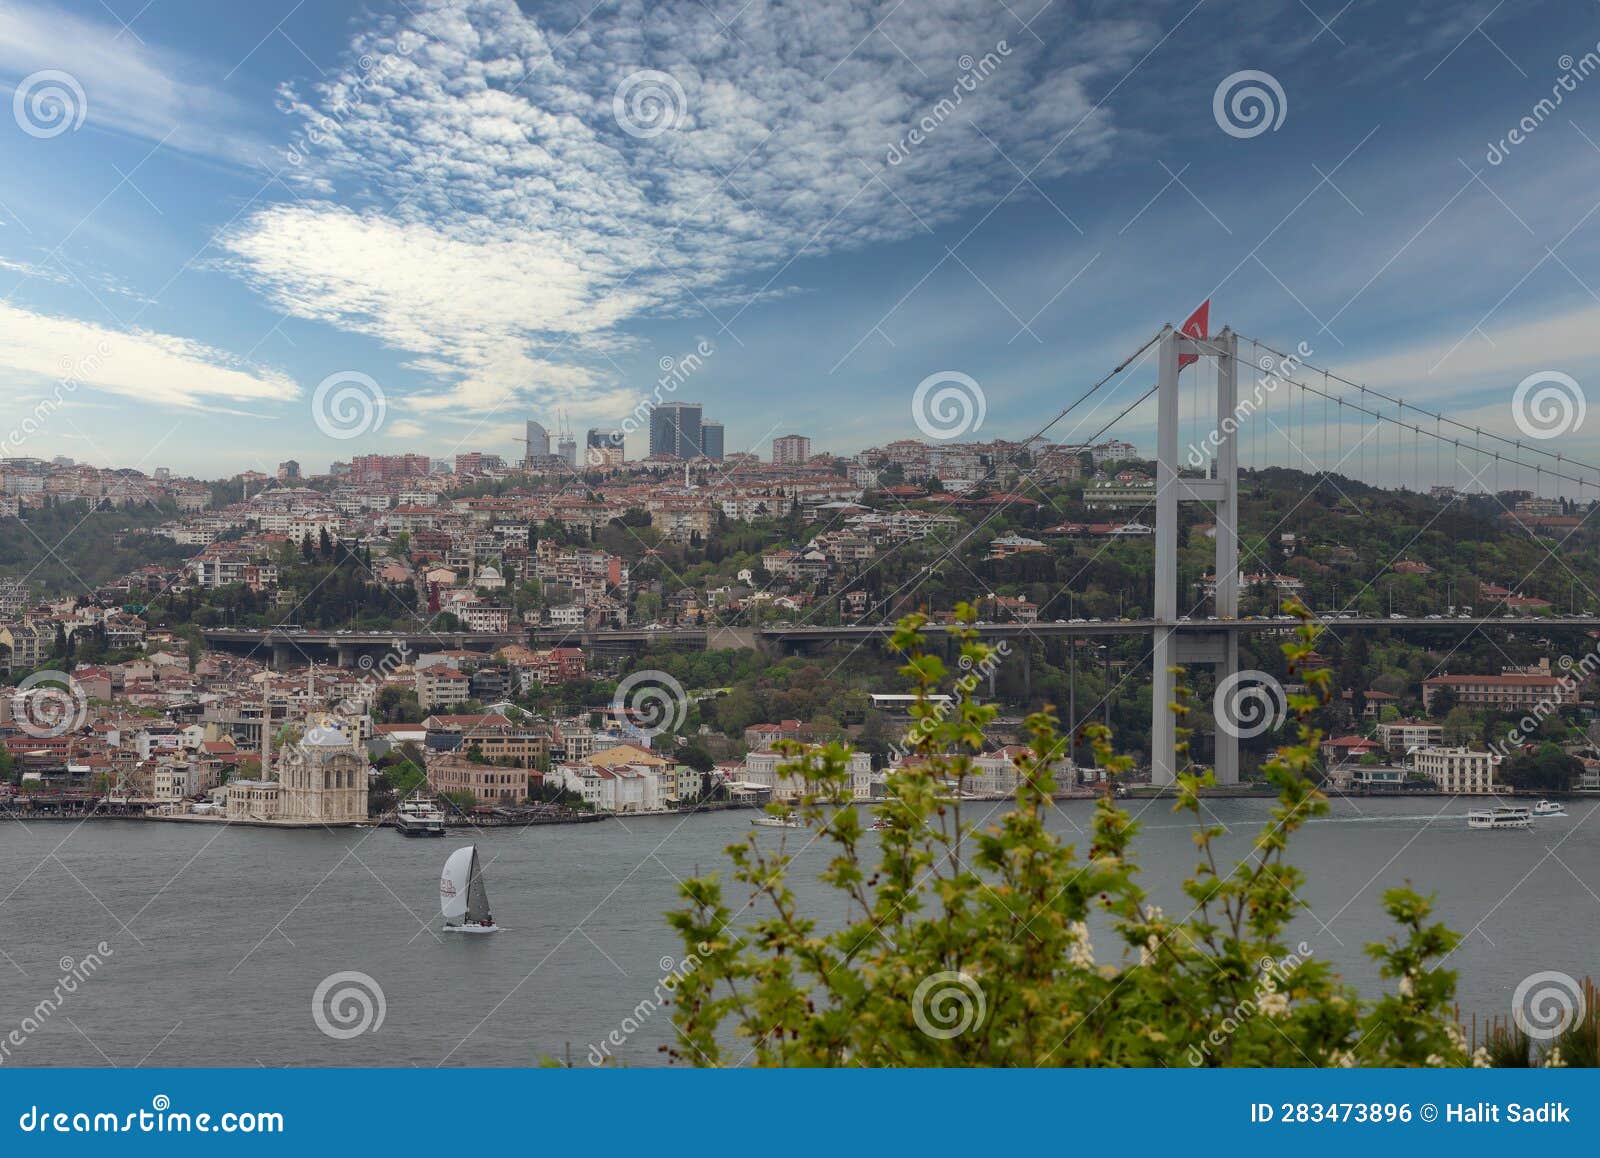 morning shot of istanbul city from fethi pasha grove overlooking bosphorus bridge, or bogazici koprusu, istanbul, turkey